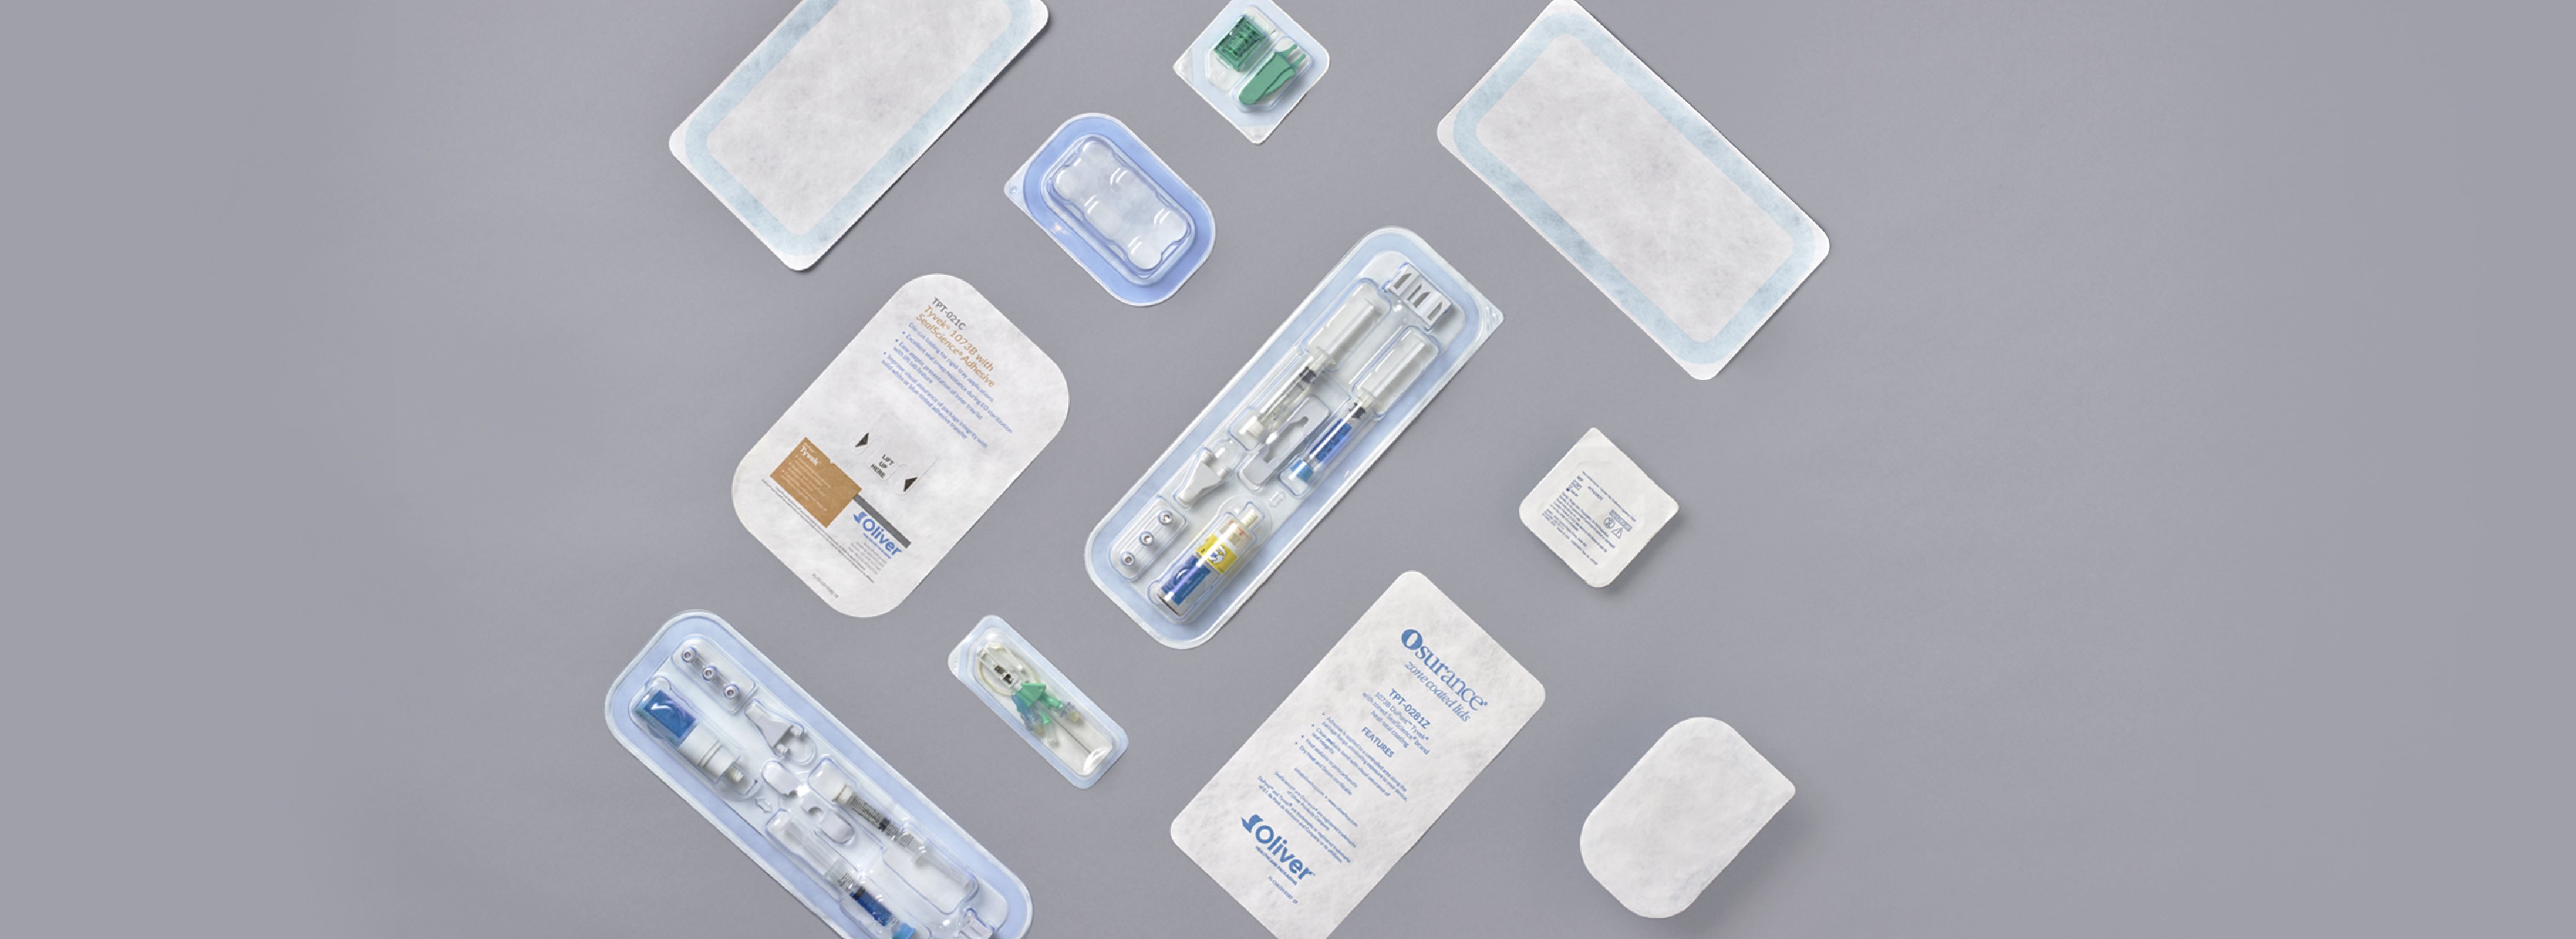 Gestanzte Deckel für medizinische Verpackungen | Oliver Healthcare Packaging